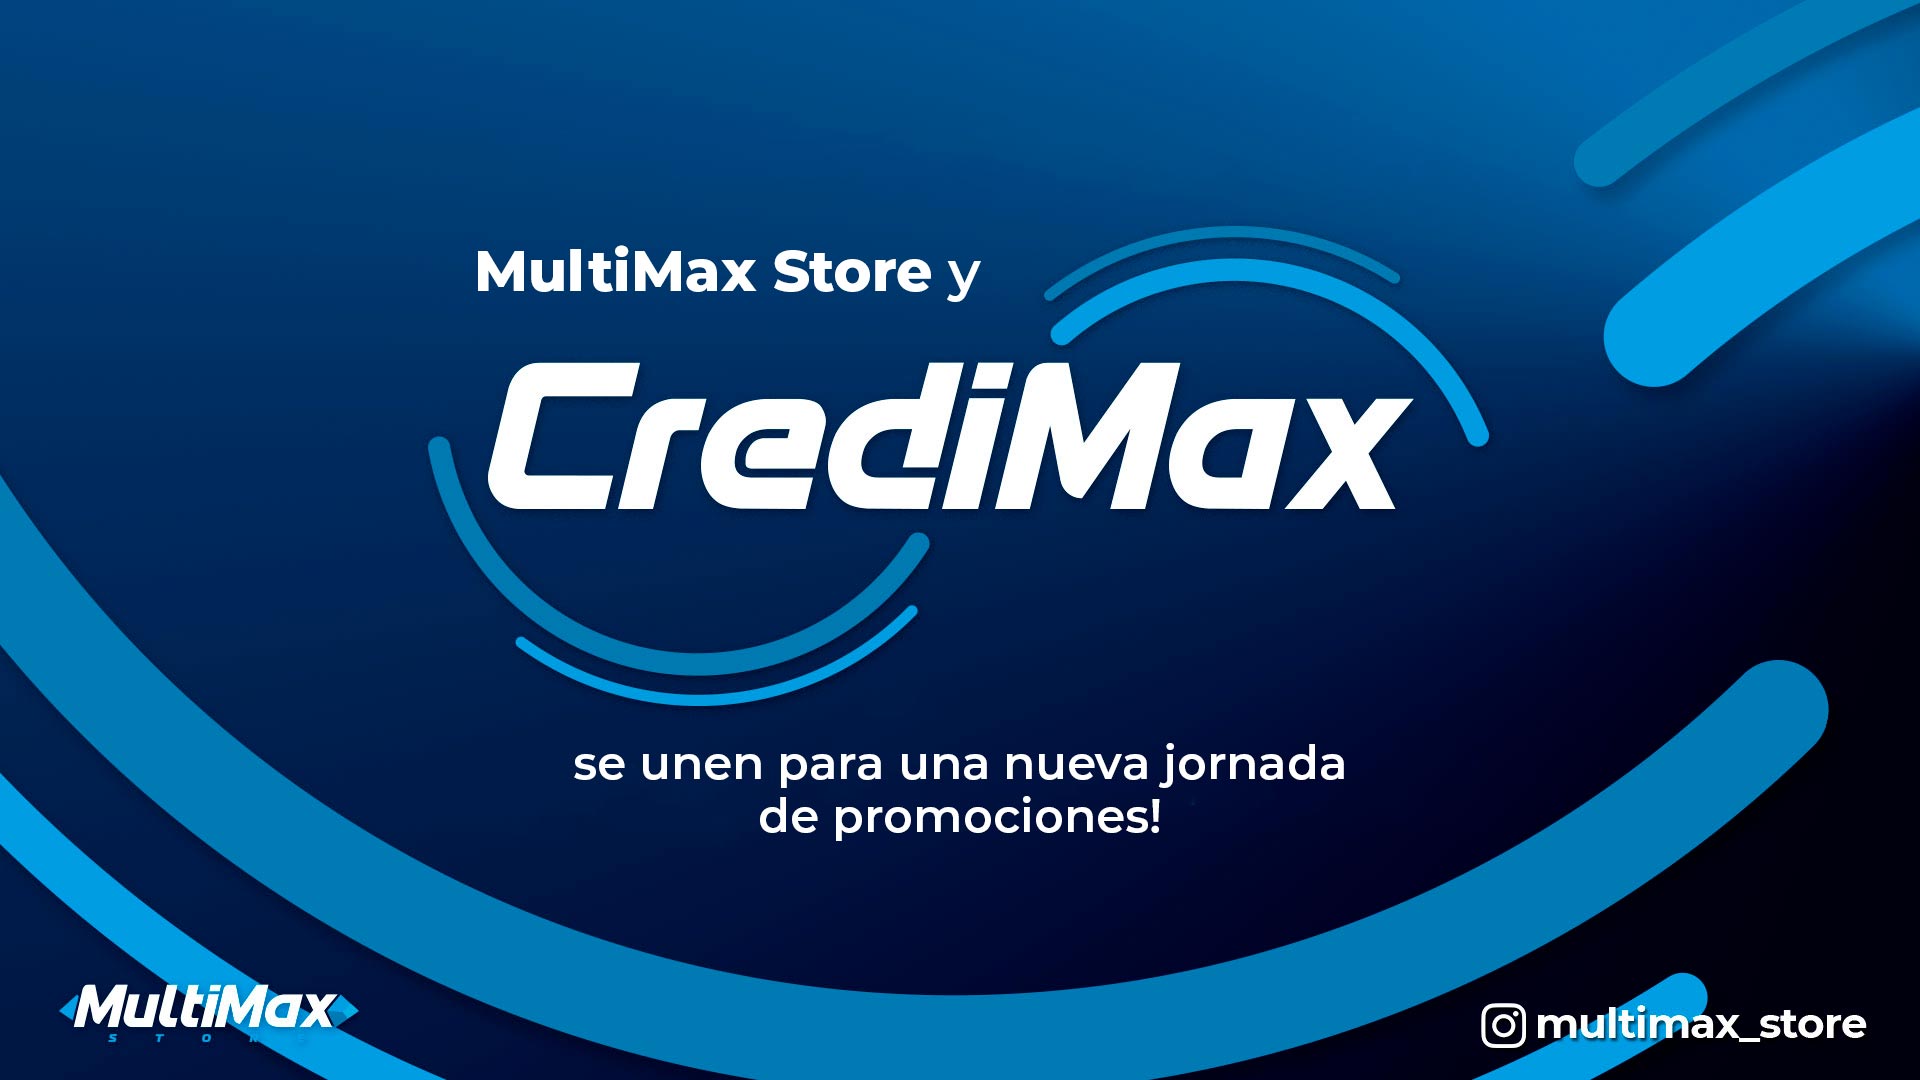 ¡MultiMax Store y Credimax se unen para una nueva jornada de promociones!